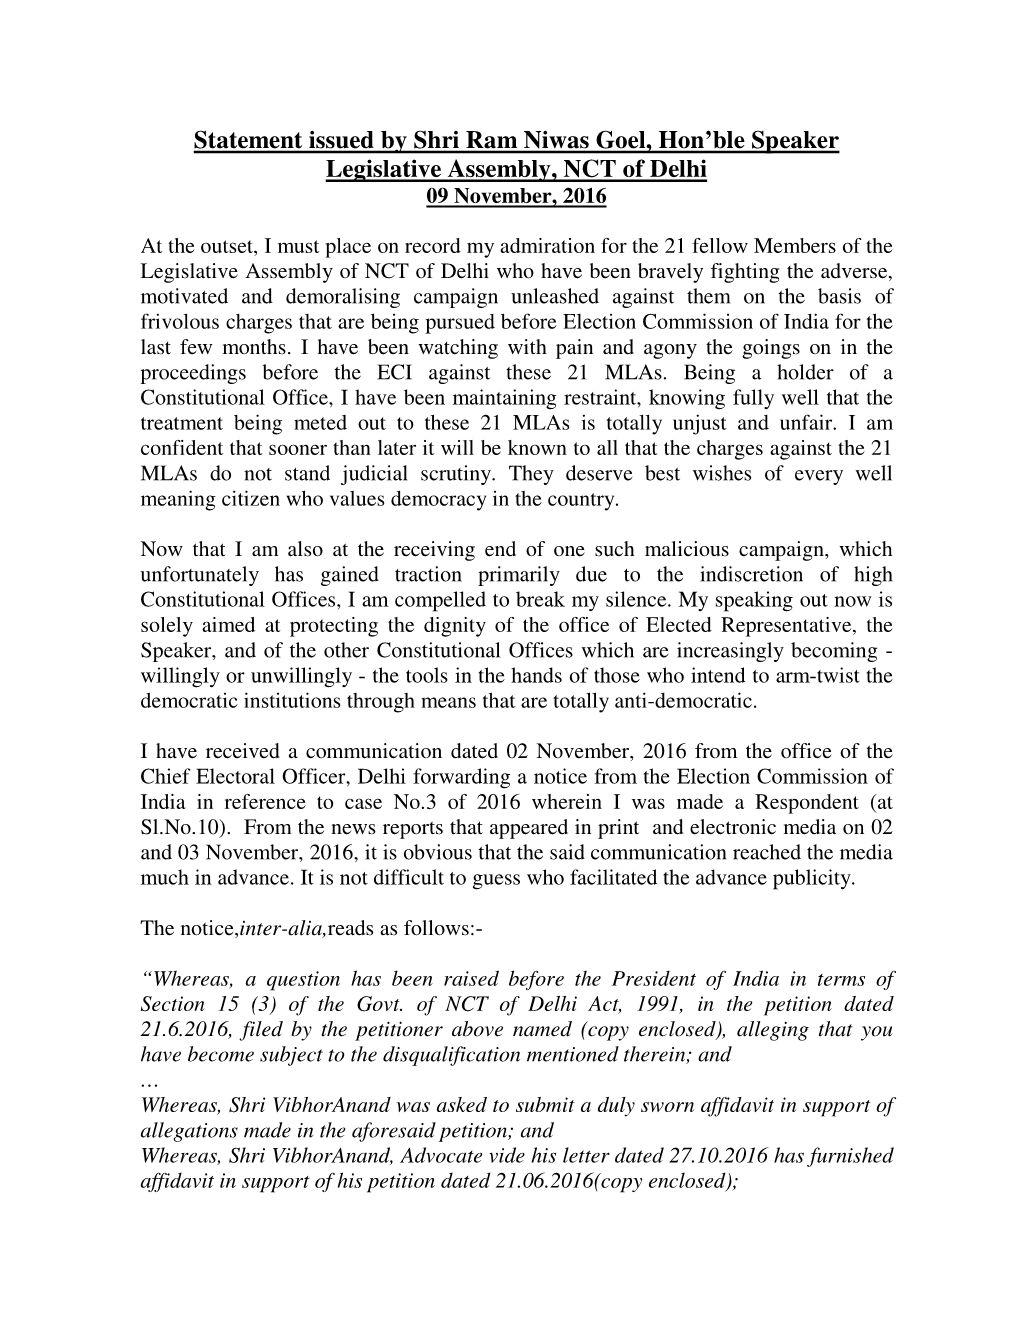 Statement Issued by Shri Ram Niwas Goel, Hon'ble Speaker Legislative